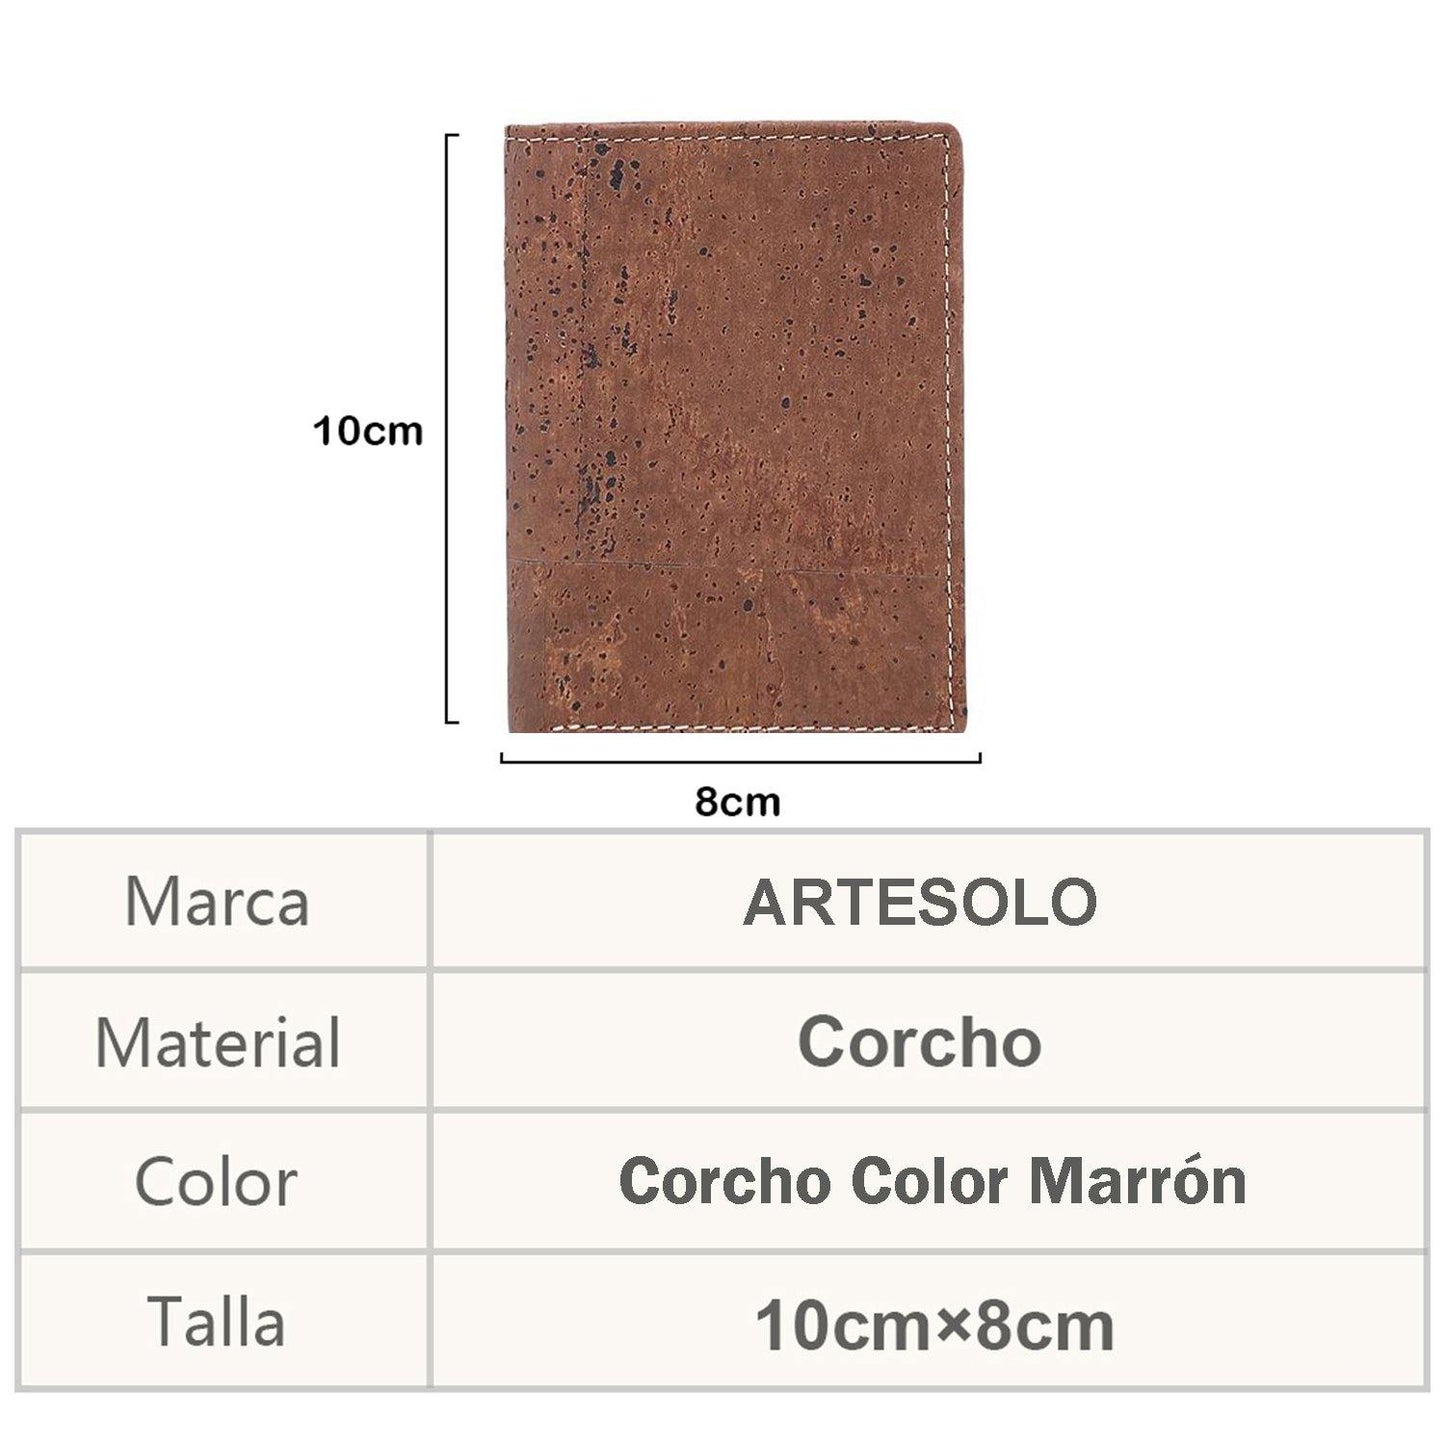 Billetera de Corcho Color Marrón - ARTE